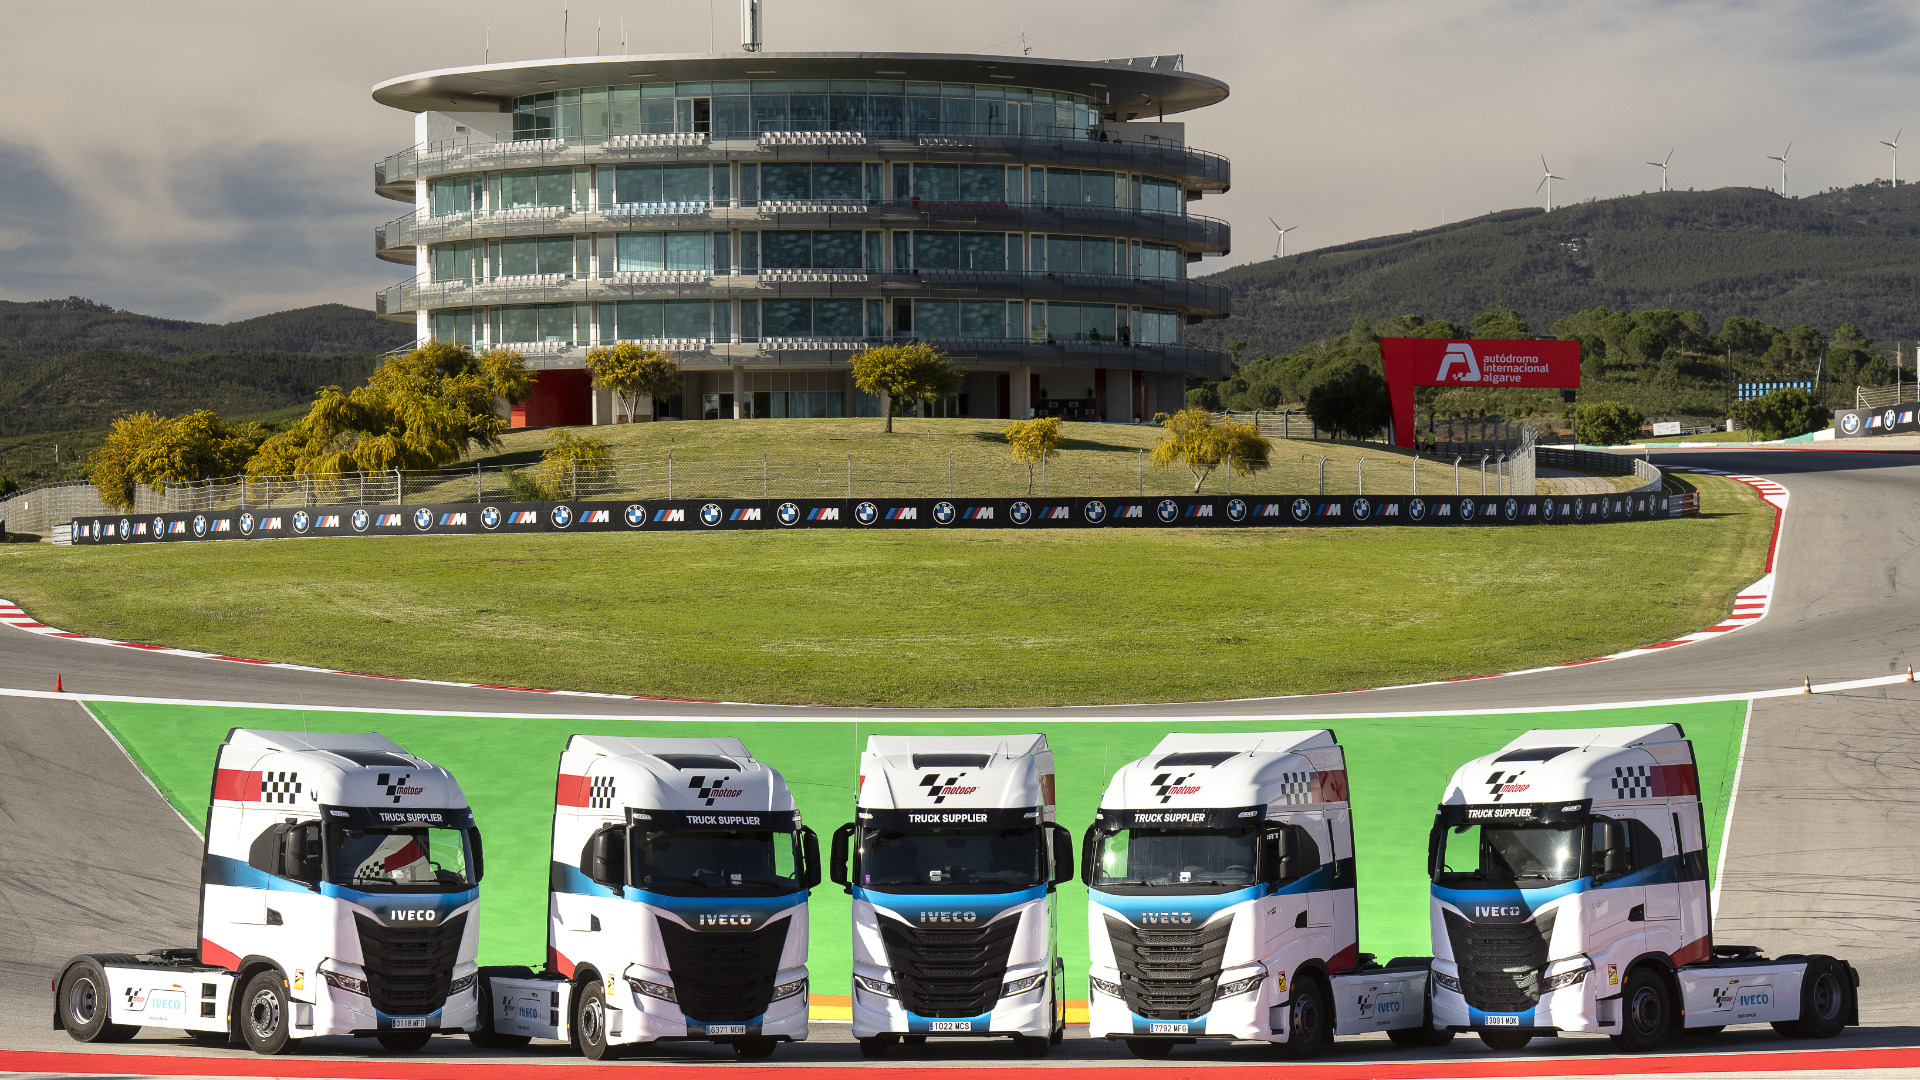 IVECO est de retour en tant que fournisseur officiel de camions pour le MotoGPTM